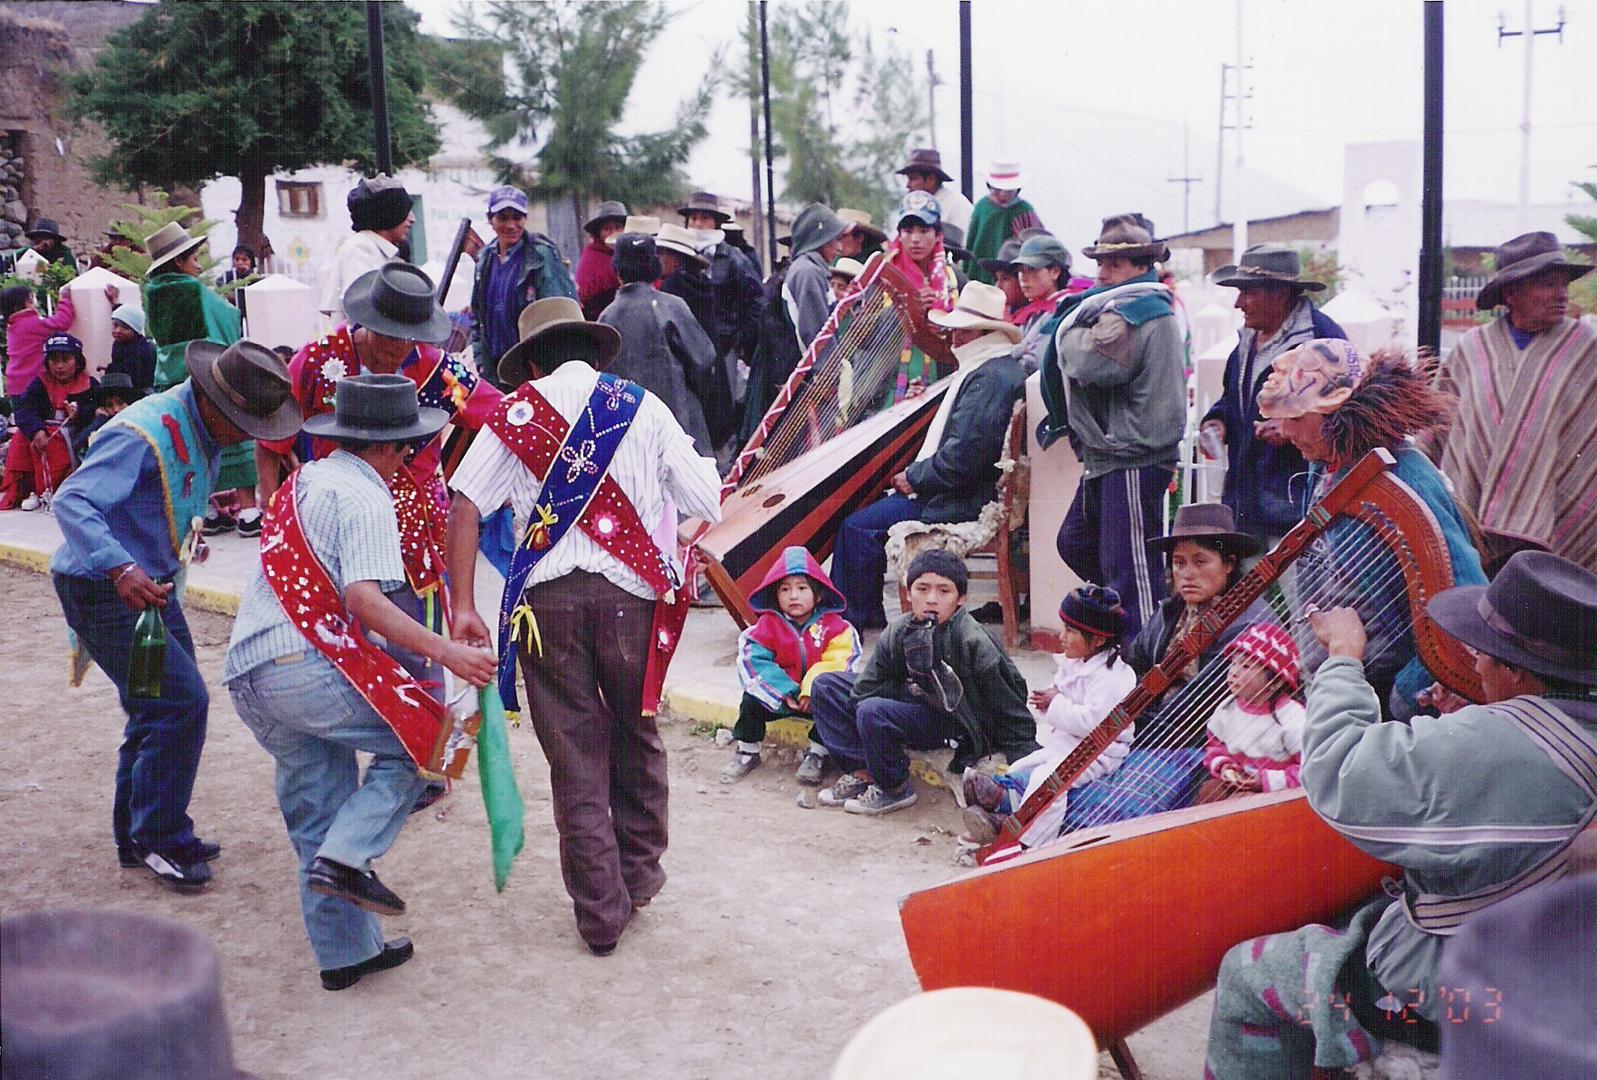 Peruanische Harfe